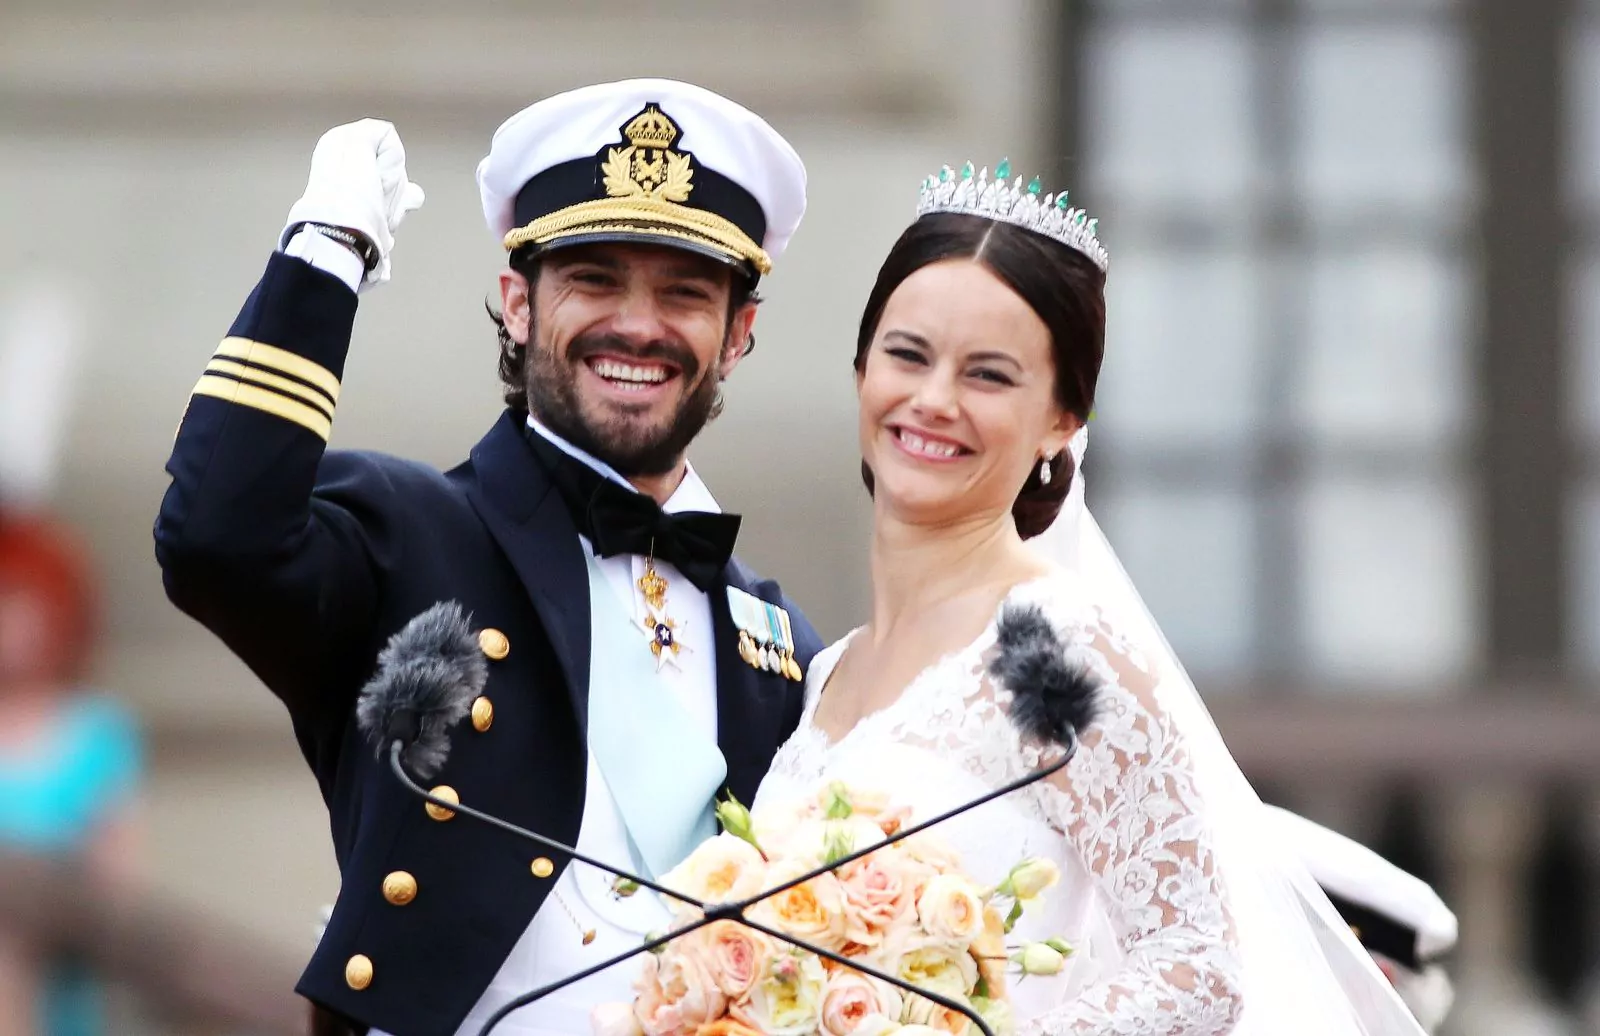 Свадьба принца Швеции Карла Филиппа и Софии Хелльквист в Королевском дворце в Стокгольме, 13 июня 2015 г.